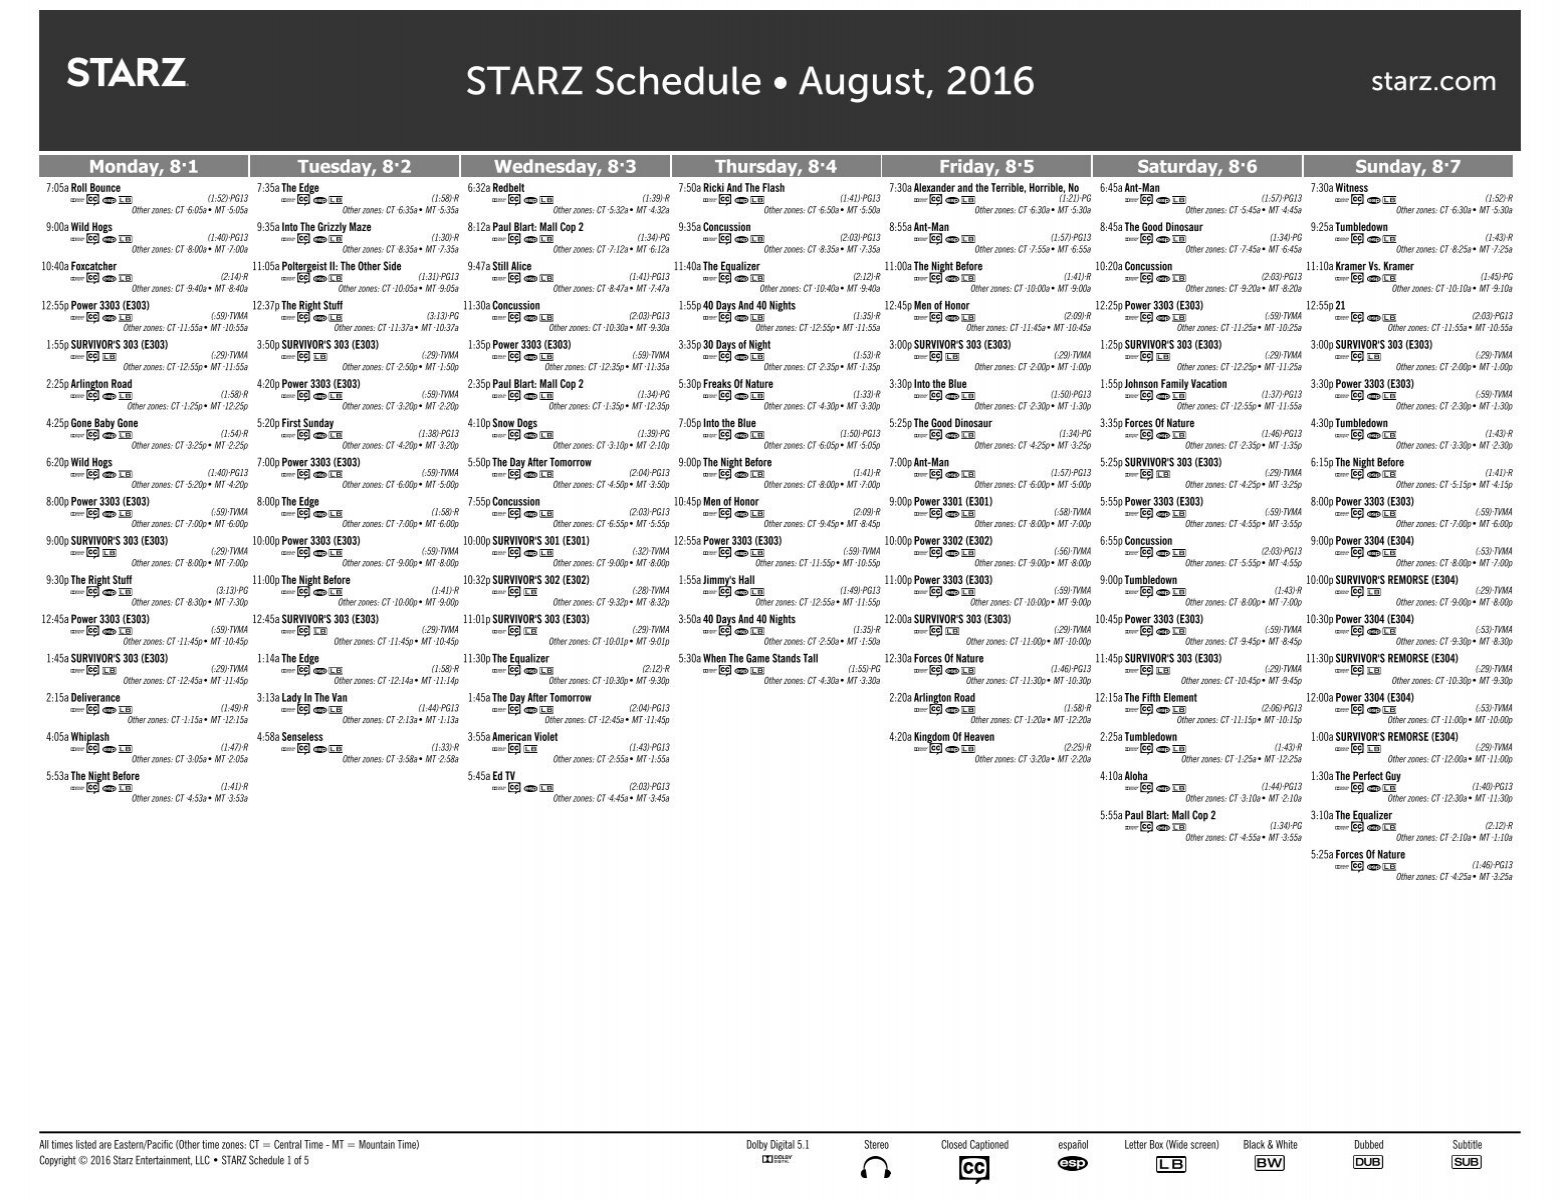 STARZ Schedule • August 2016